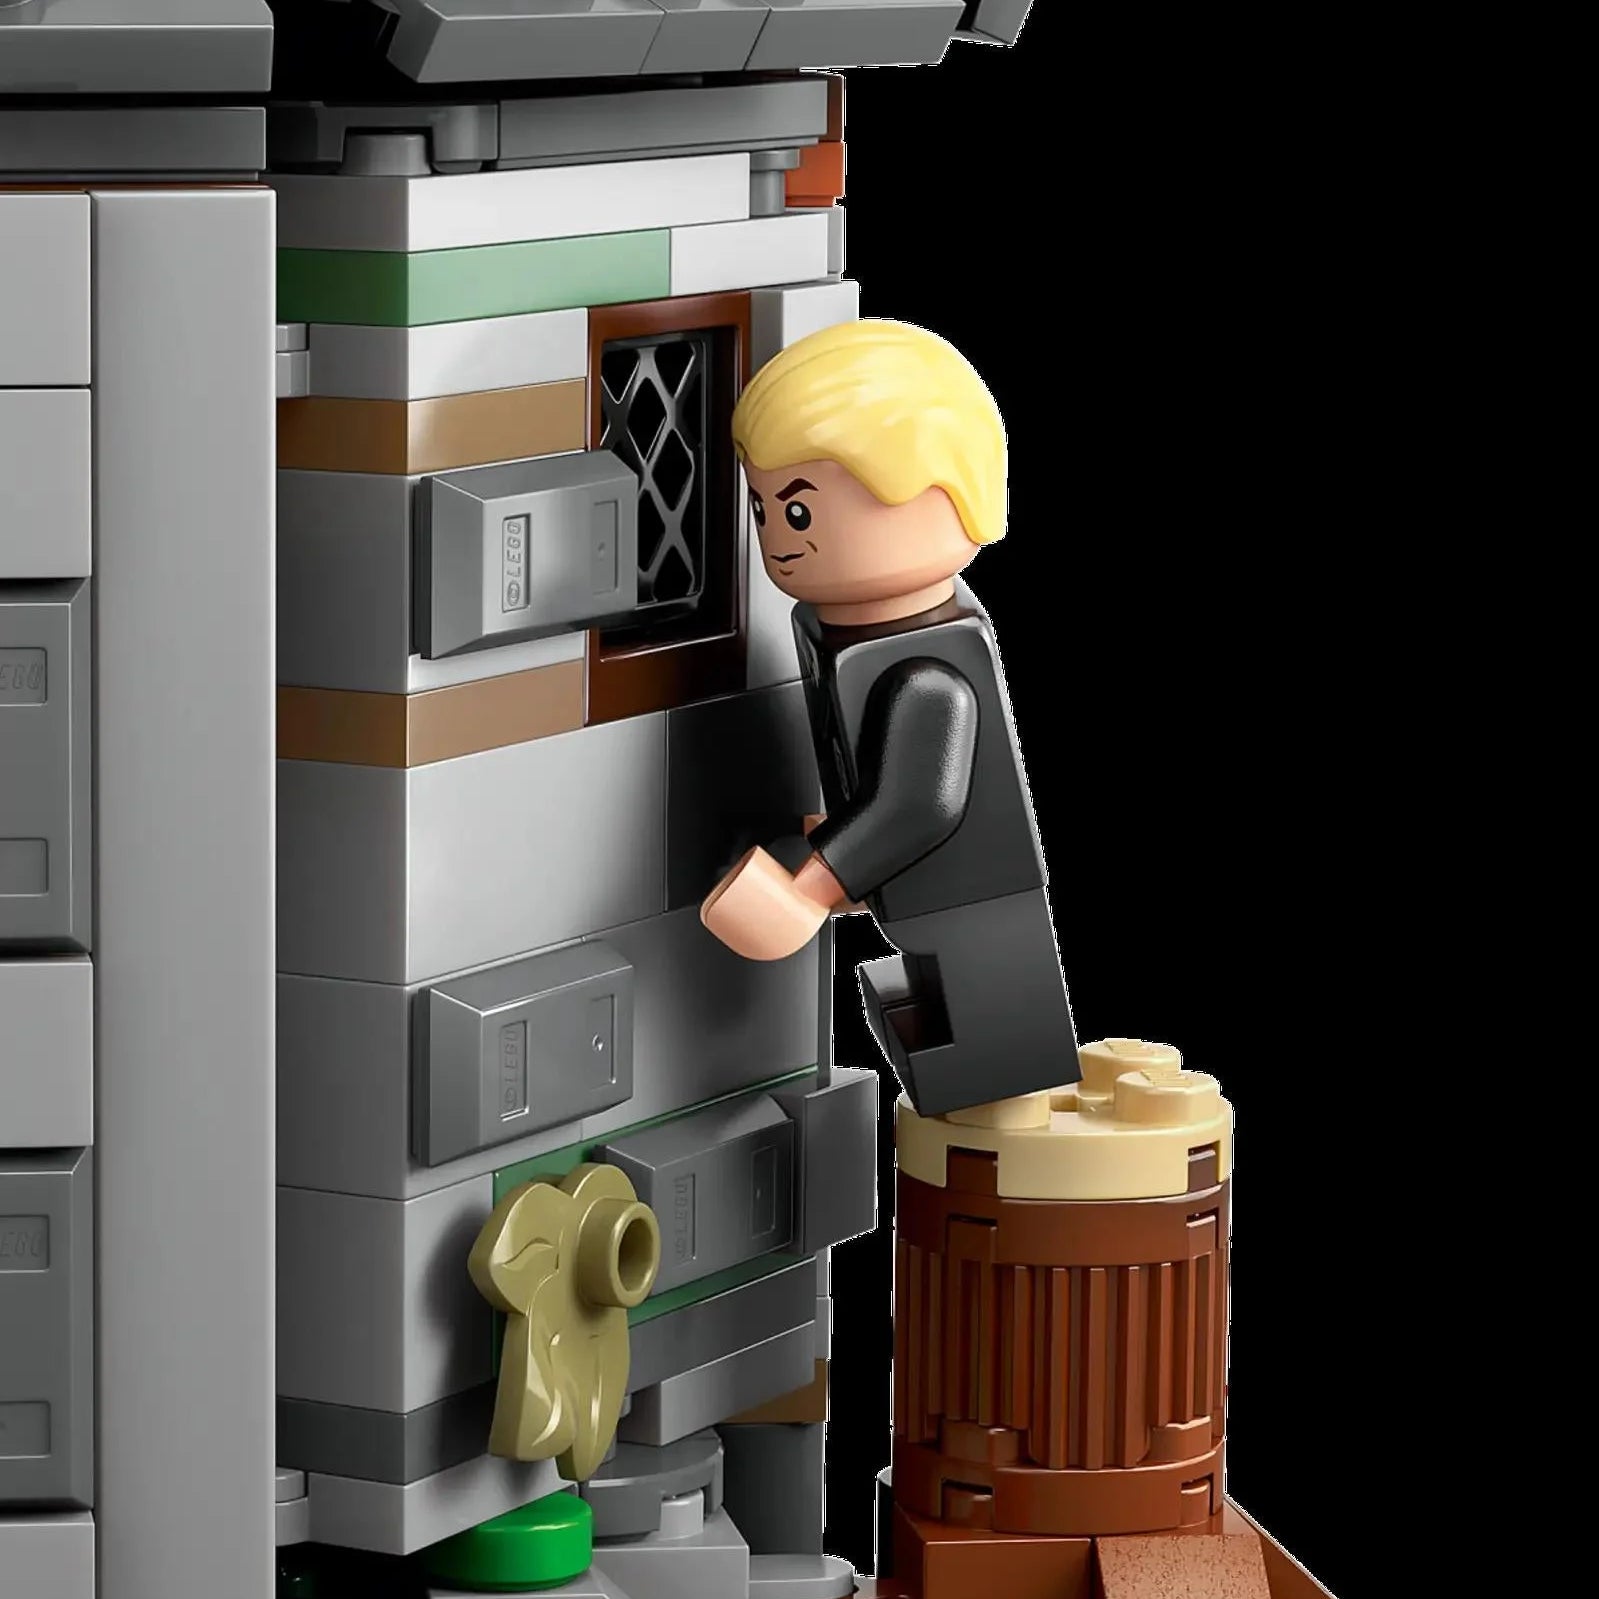 Lego Harry Potter Hagrid’in Kulübesi: Beklenmedik Bir Ziyaret 76428 | Toysall